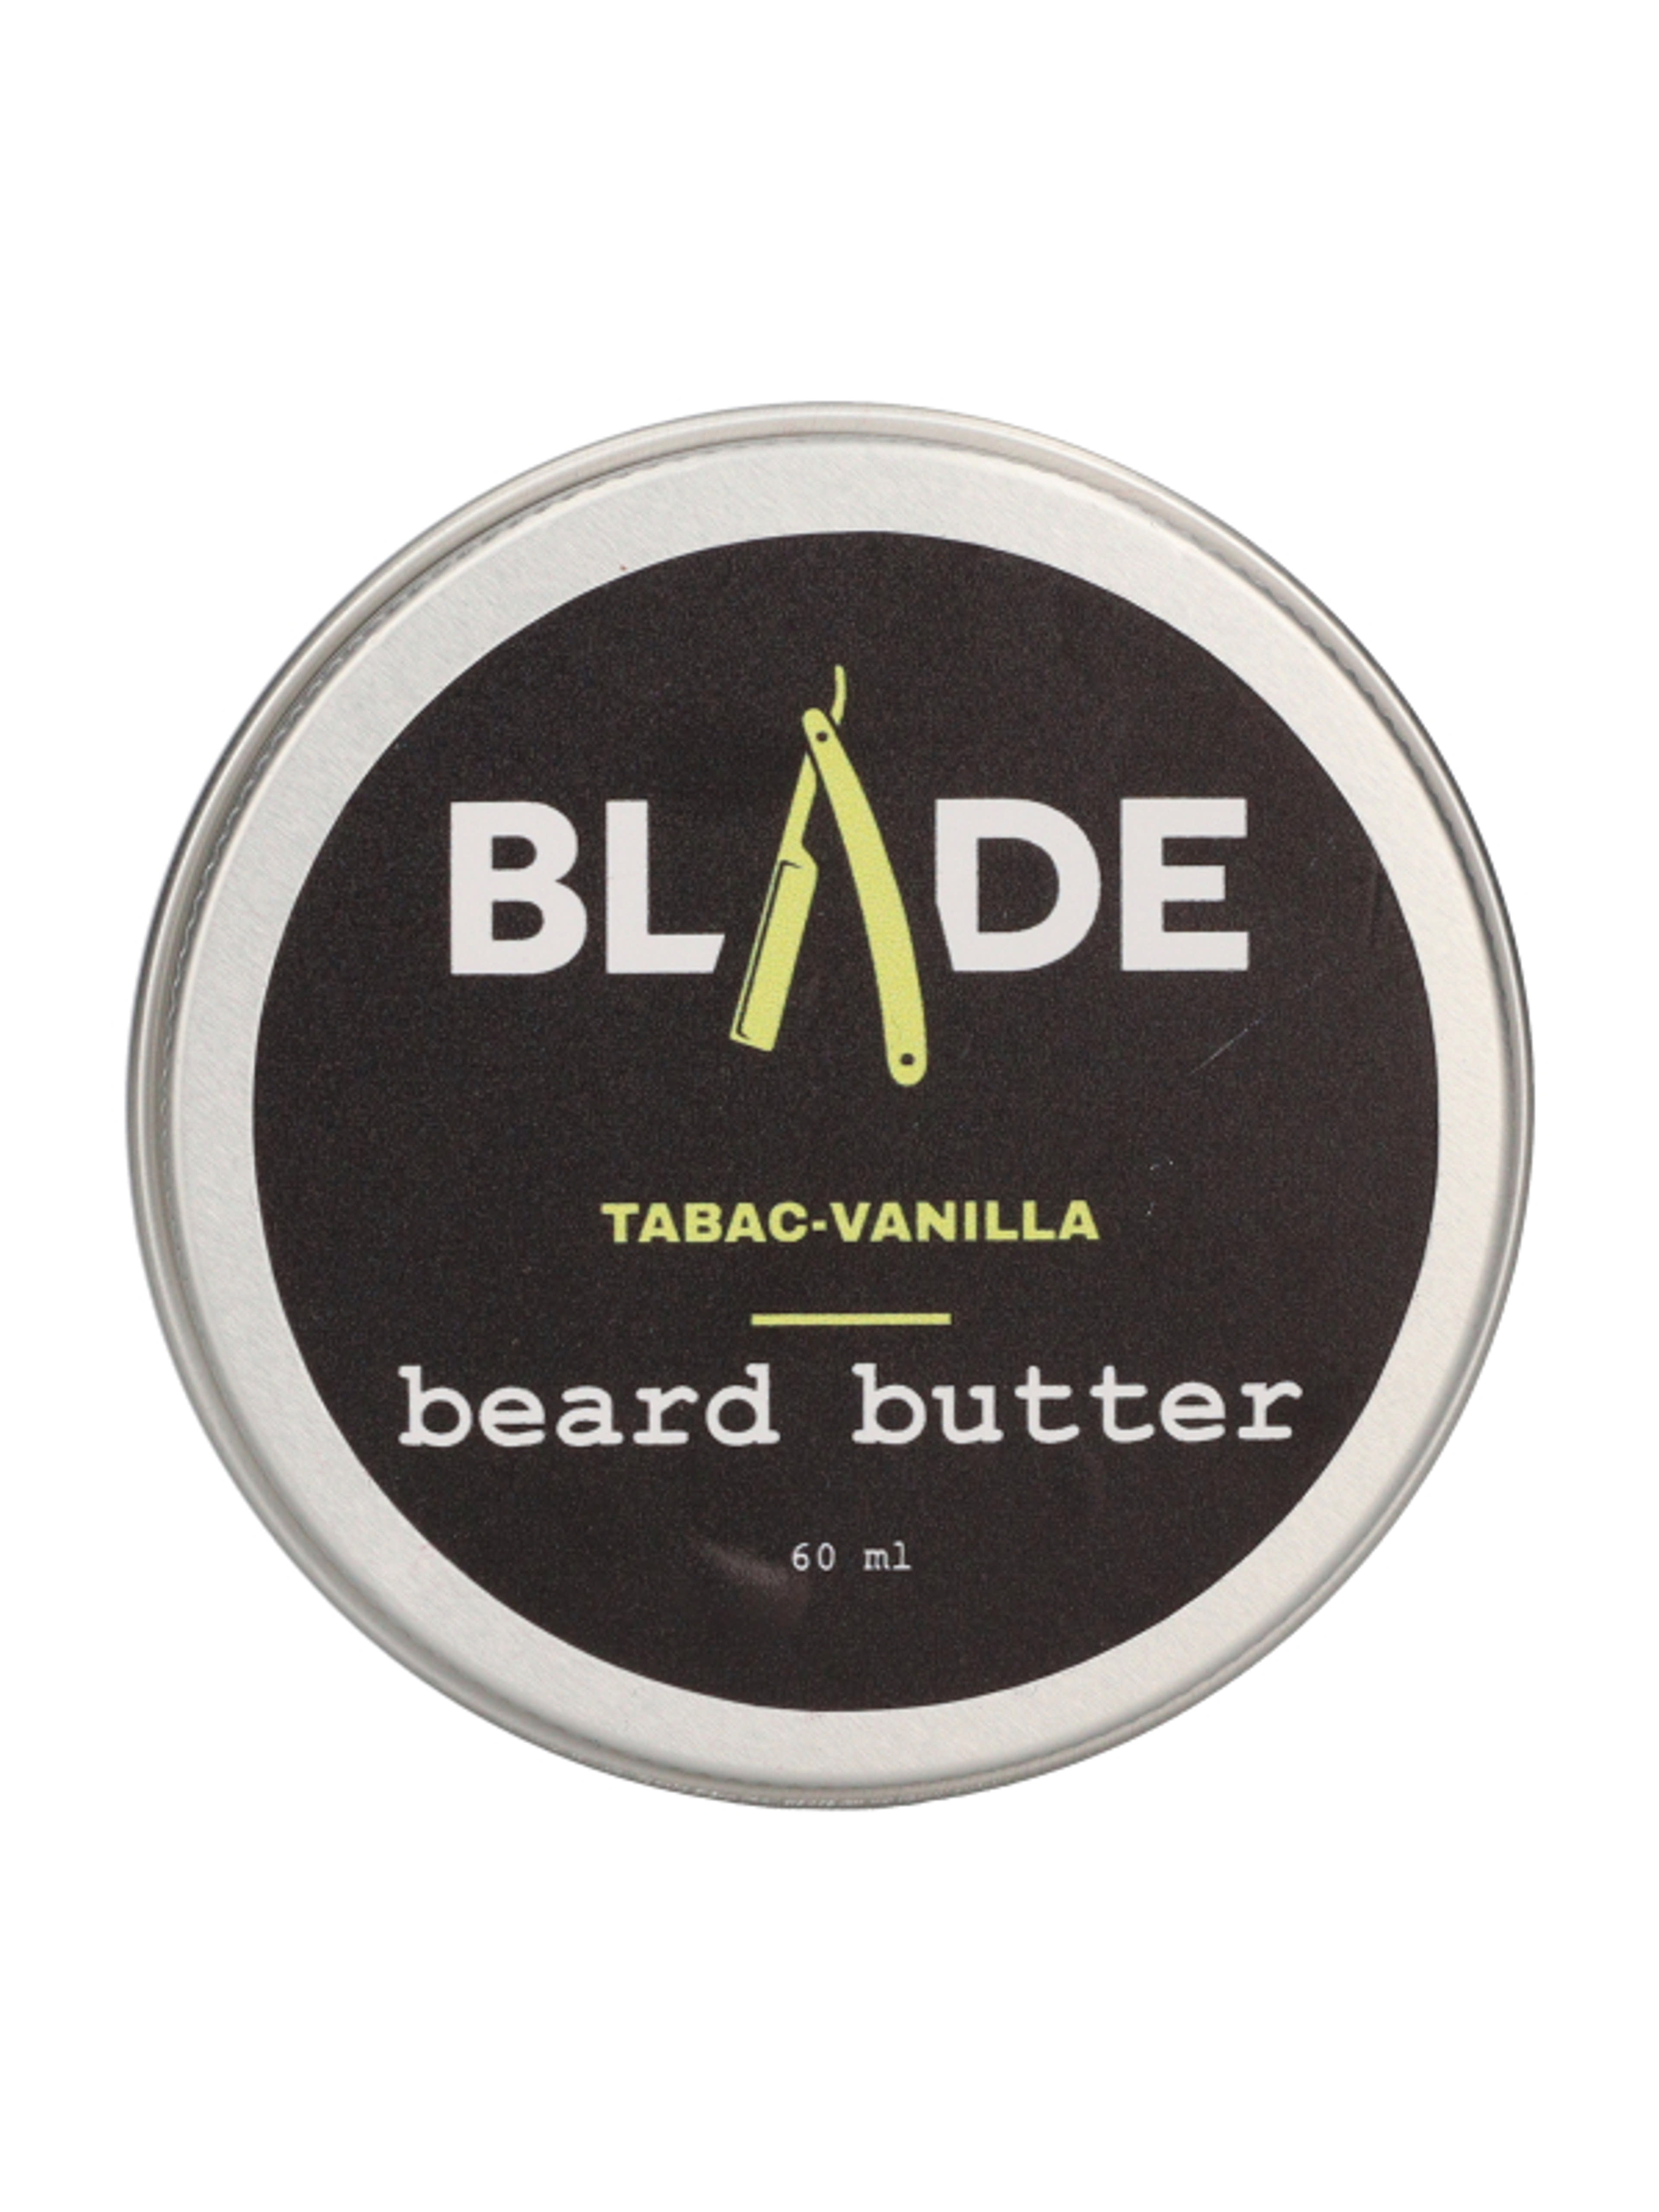 Blade szakállvaj dohány-vanília - 60 ml